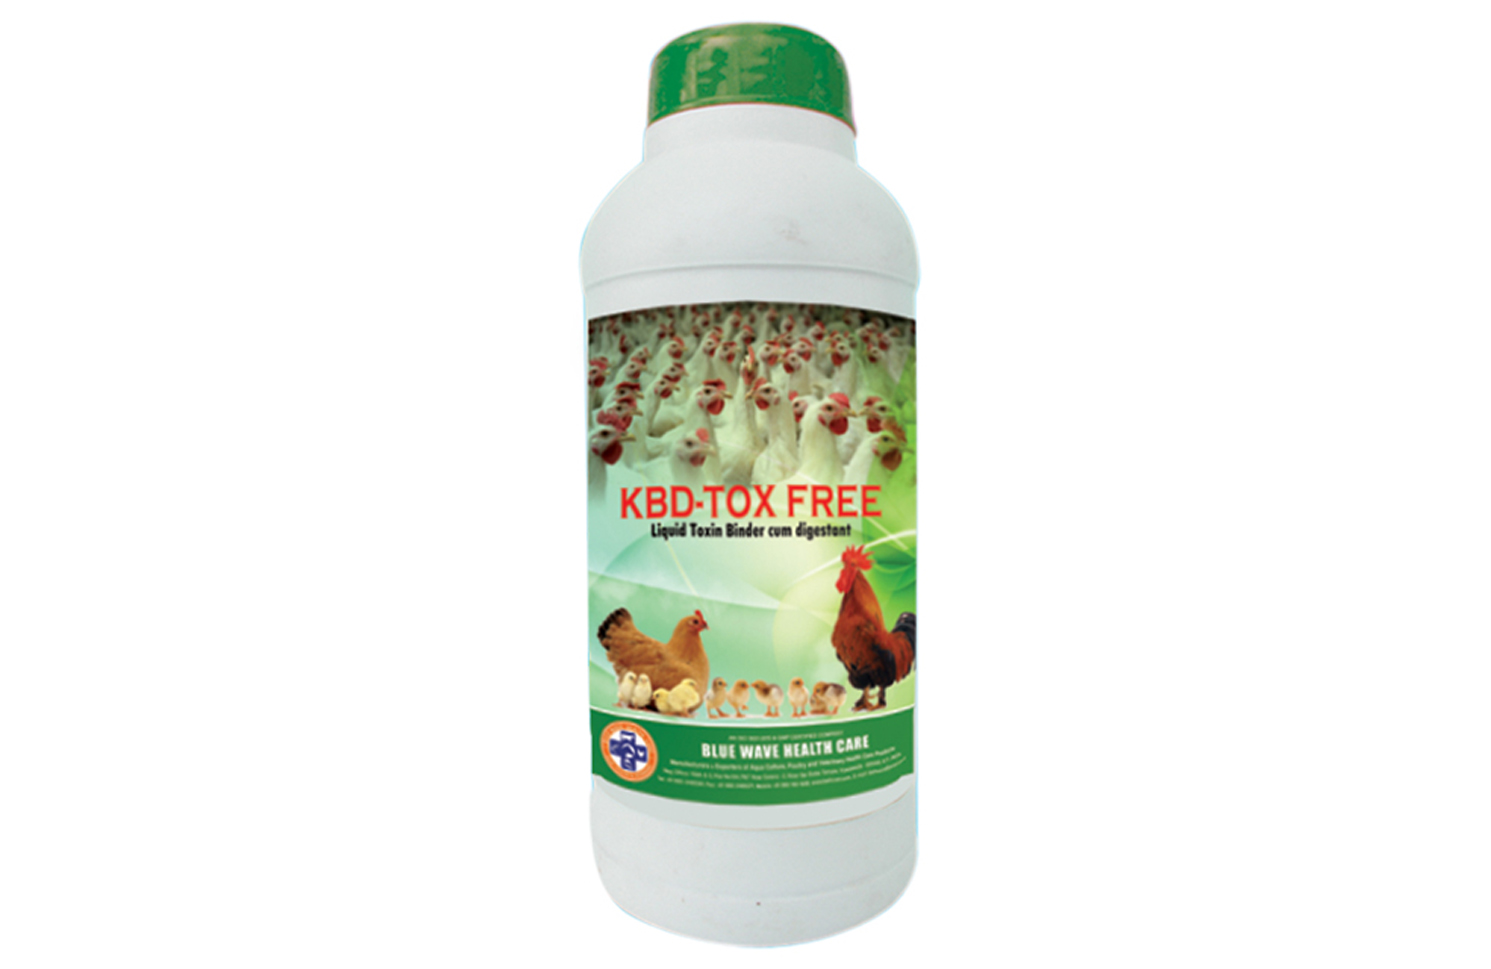 KBD-TOX FREE (Liquid Toxin Binder cum digestant)